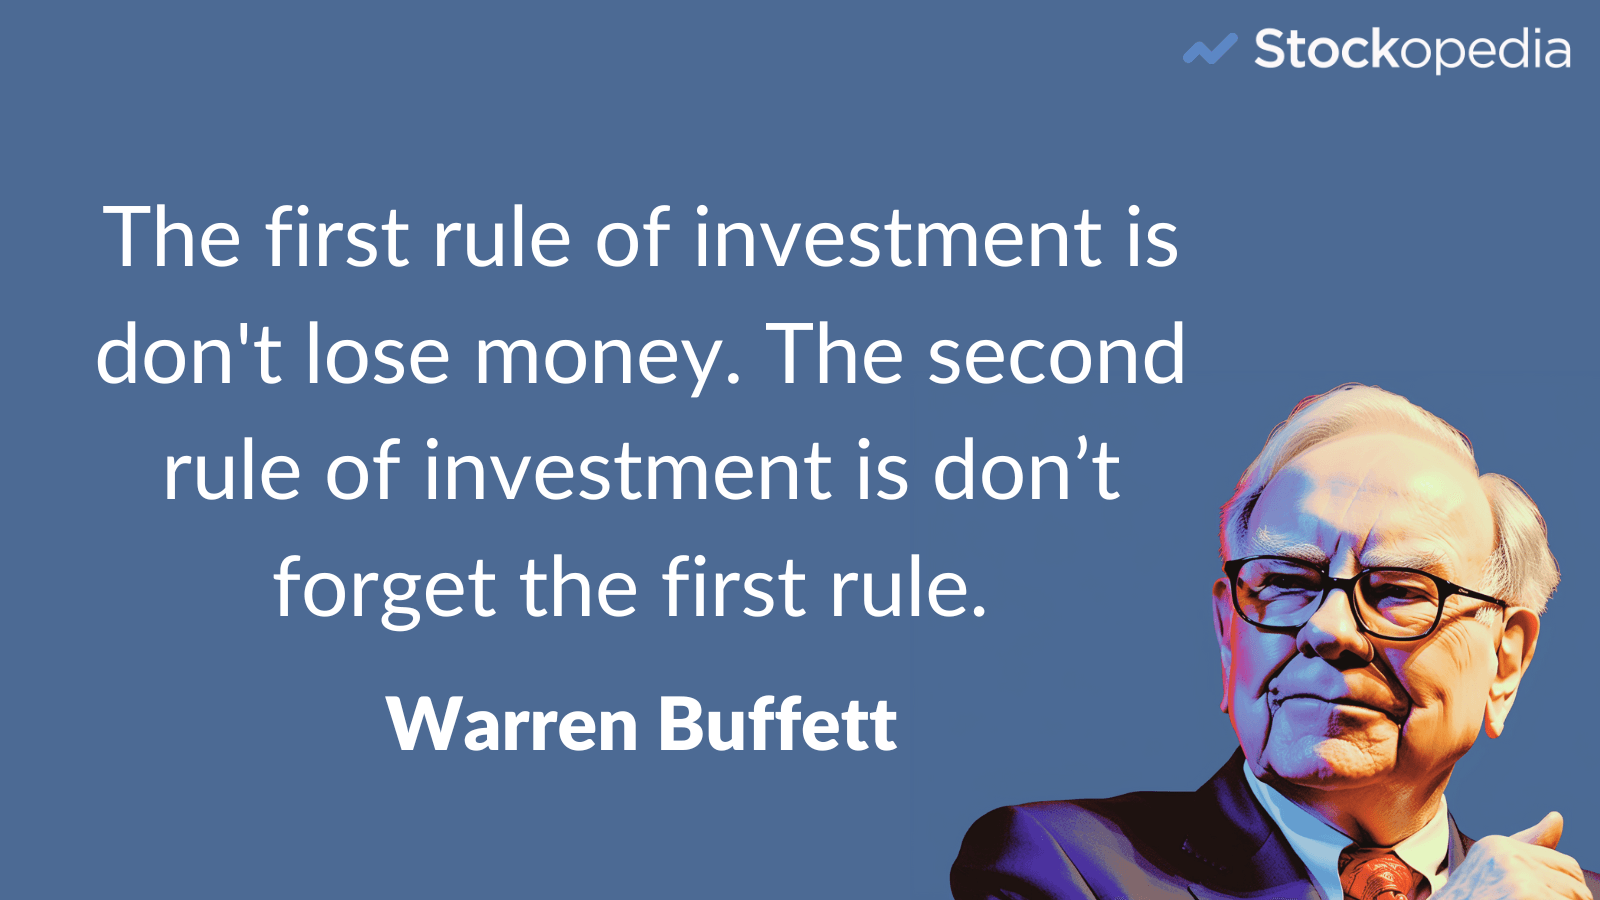 Warren Buffett - don't lose money